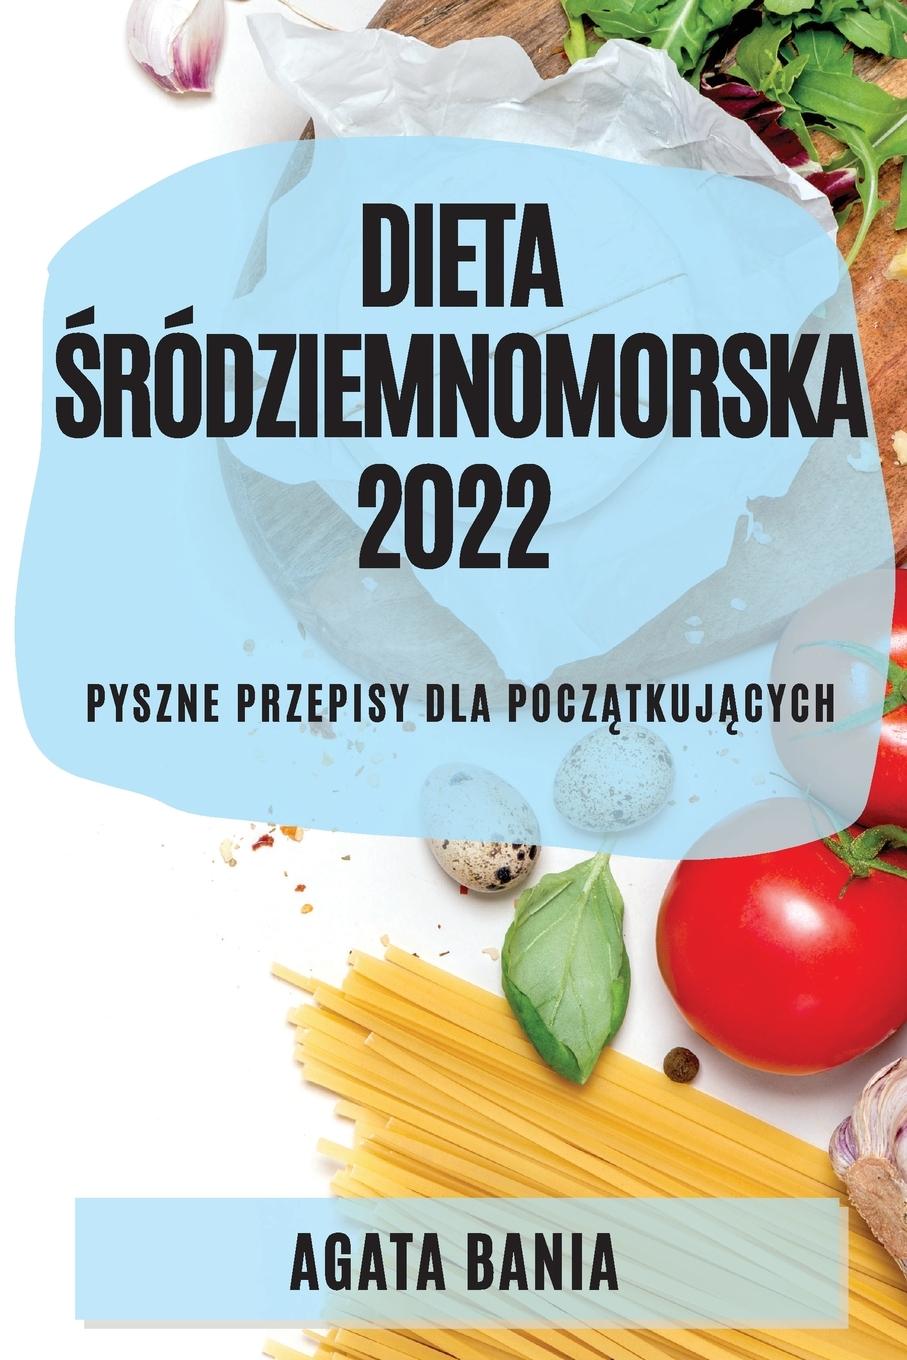 Book Dieta &#346;rodziemnomorska 2022 